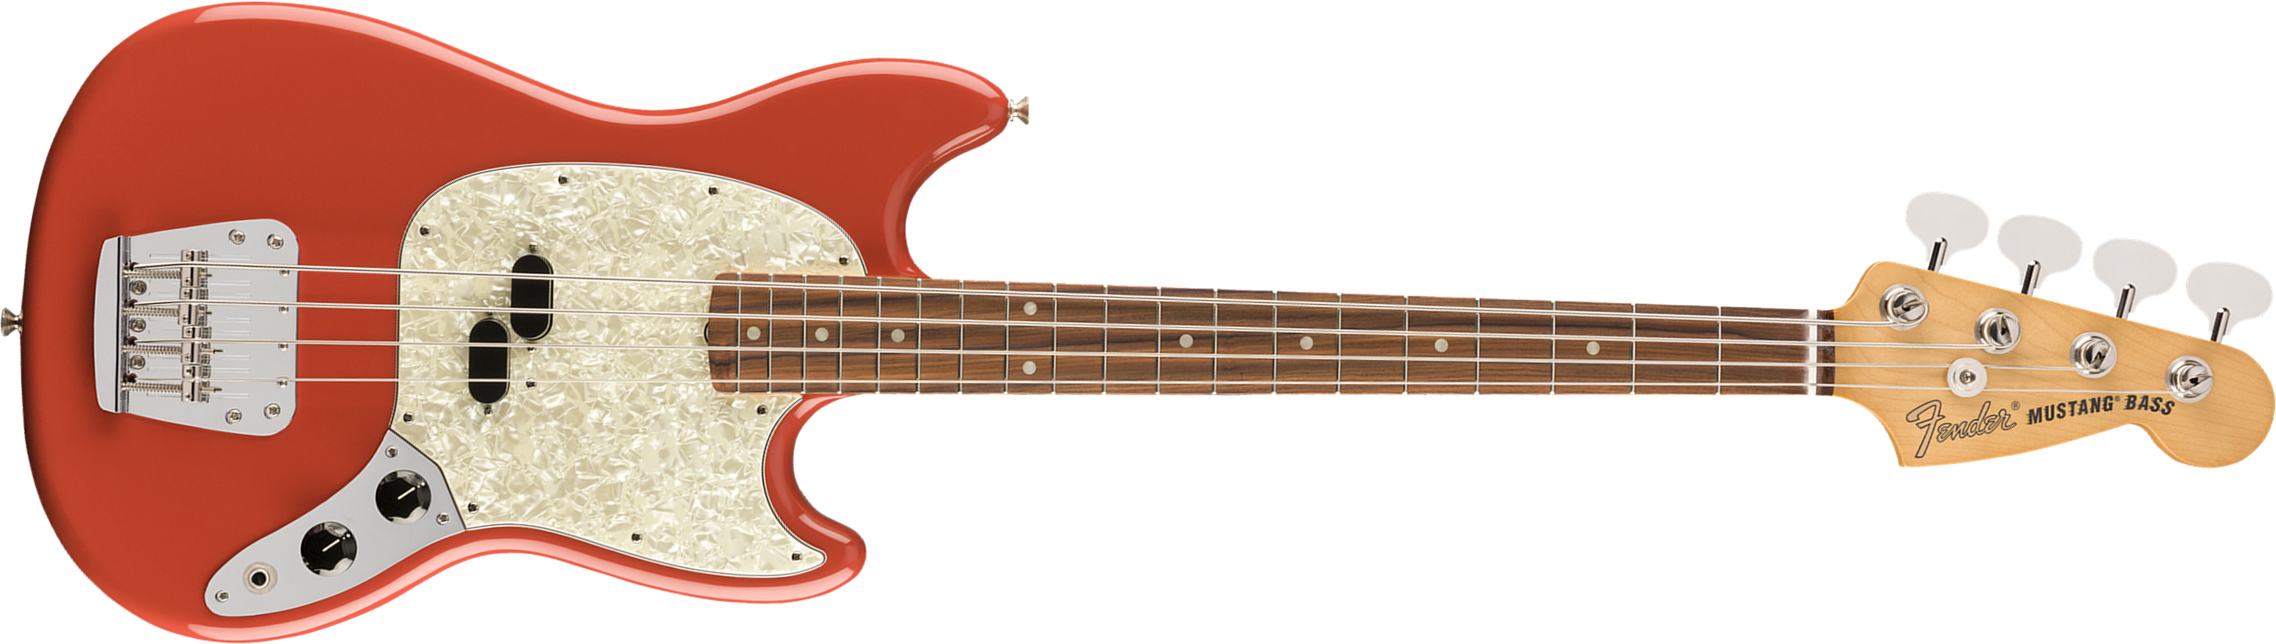 Fender Mustang Bass 60s Vintera Vintage Mex Pf - Fiesta Red - Basse Électrique Enfants - Main picture